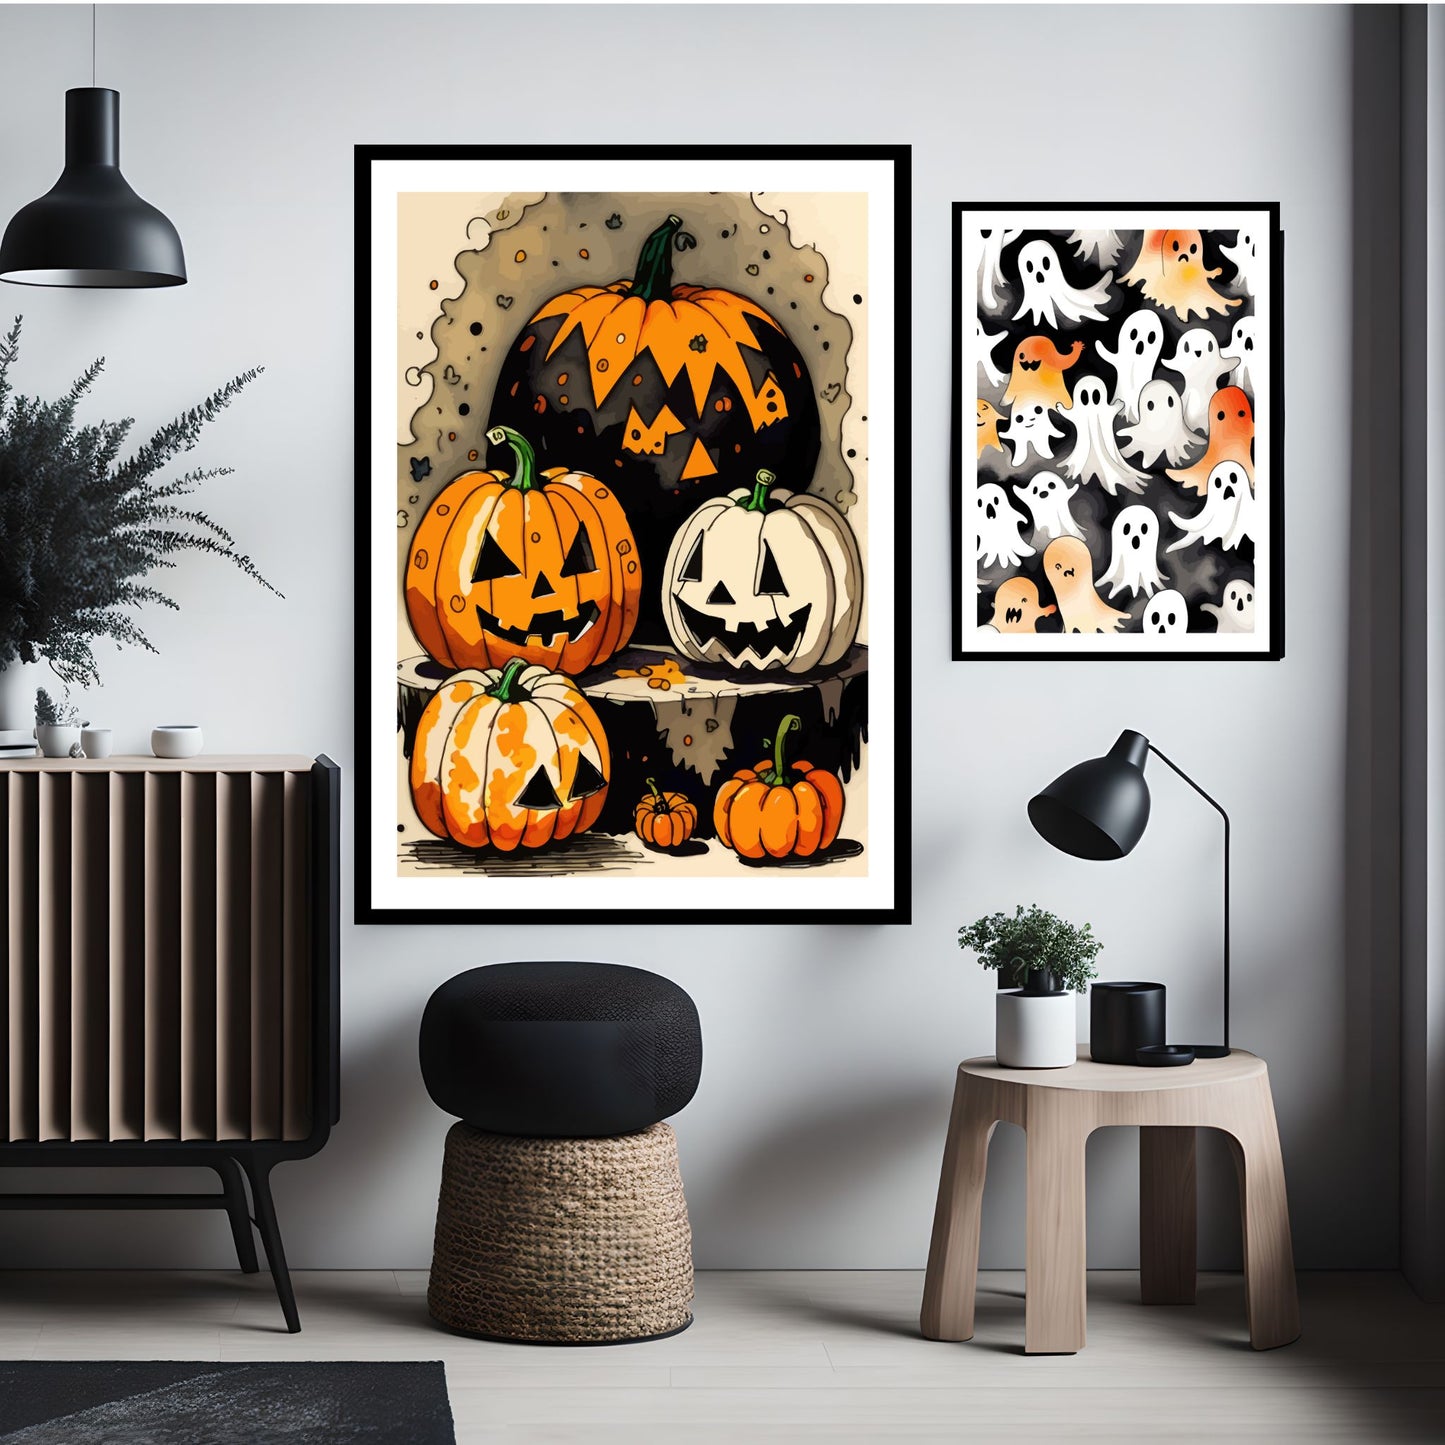 Creepy og kule halloweenplakater. Motiv som er i cartoon forestiller gresskar og spøkelser